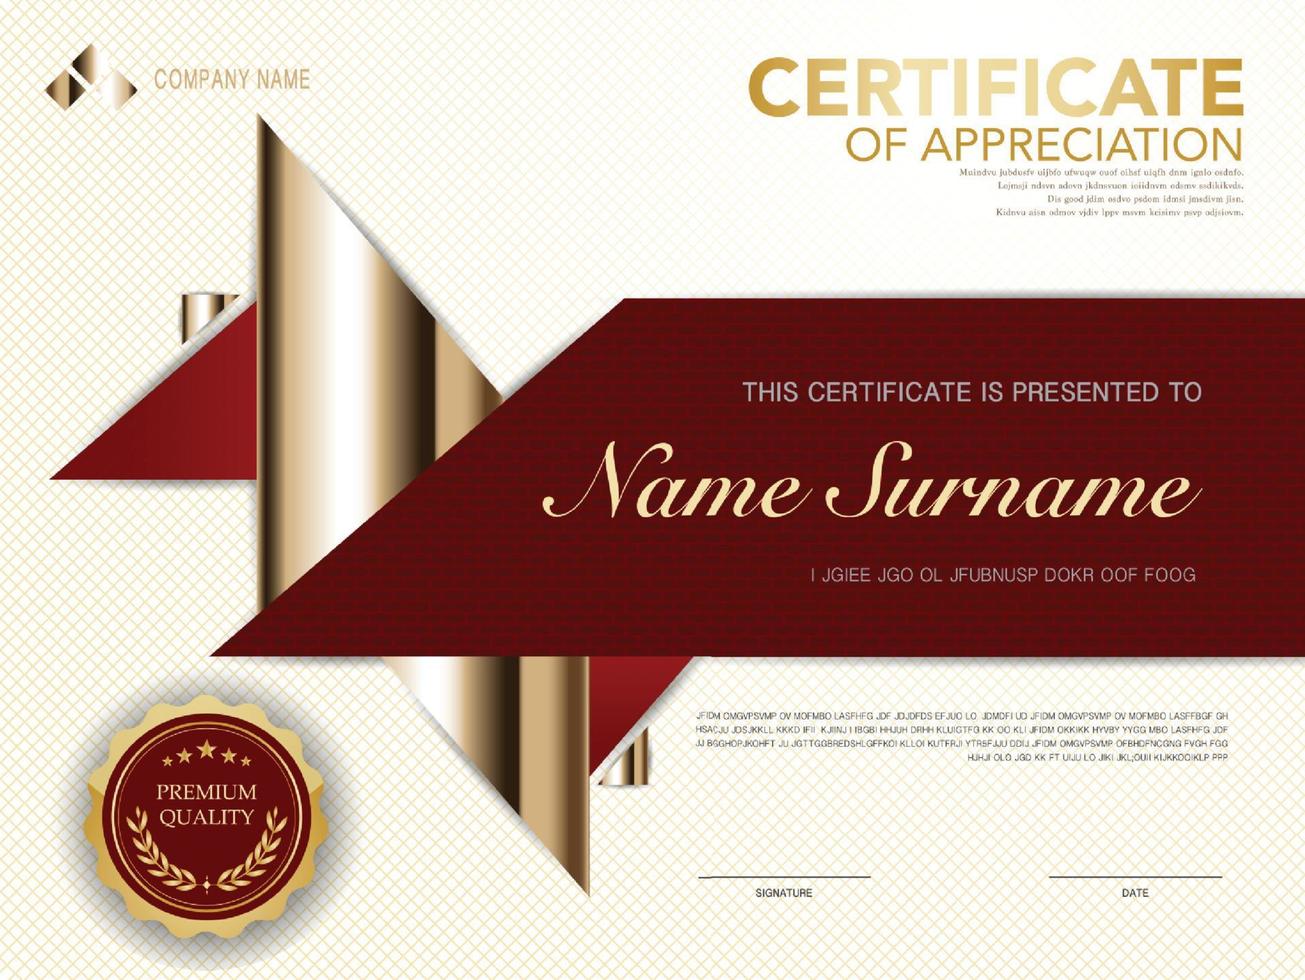 Diplom-Zertifikatsvorlage in Rot und Gold mit luxuriösem und modernem Vektorbild vektor